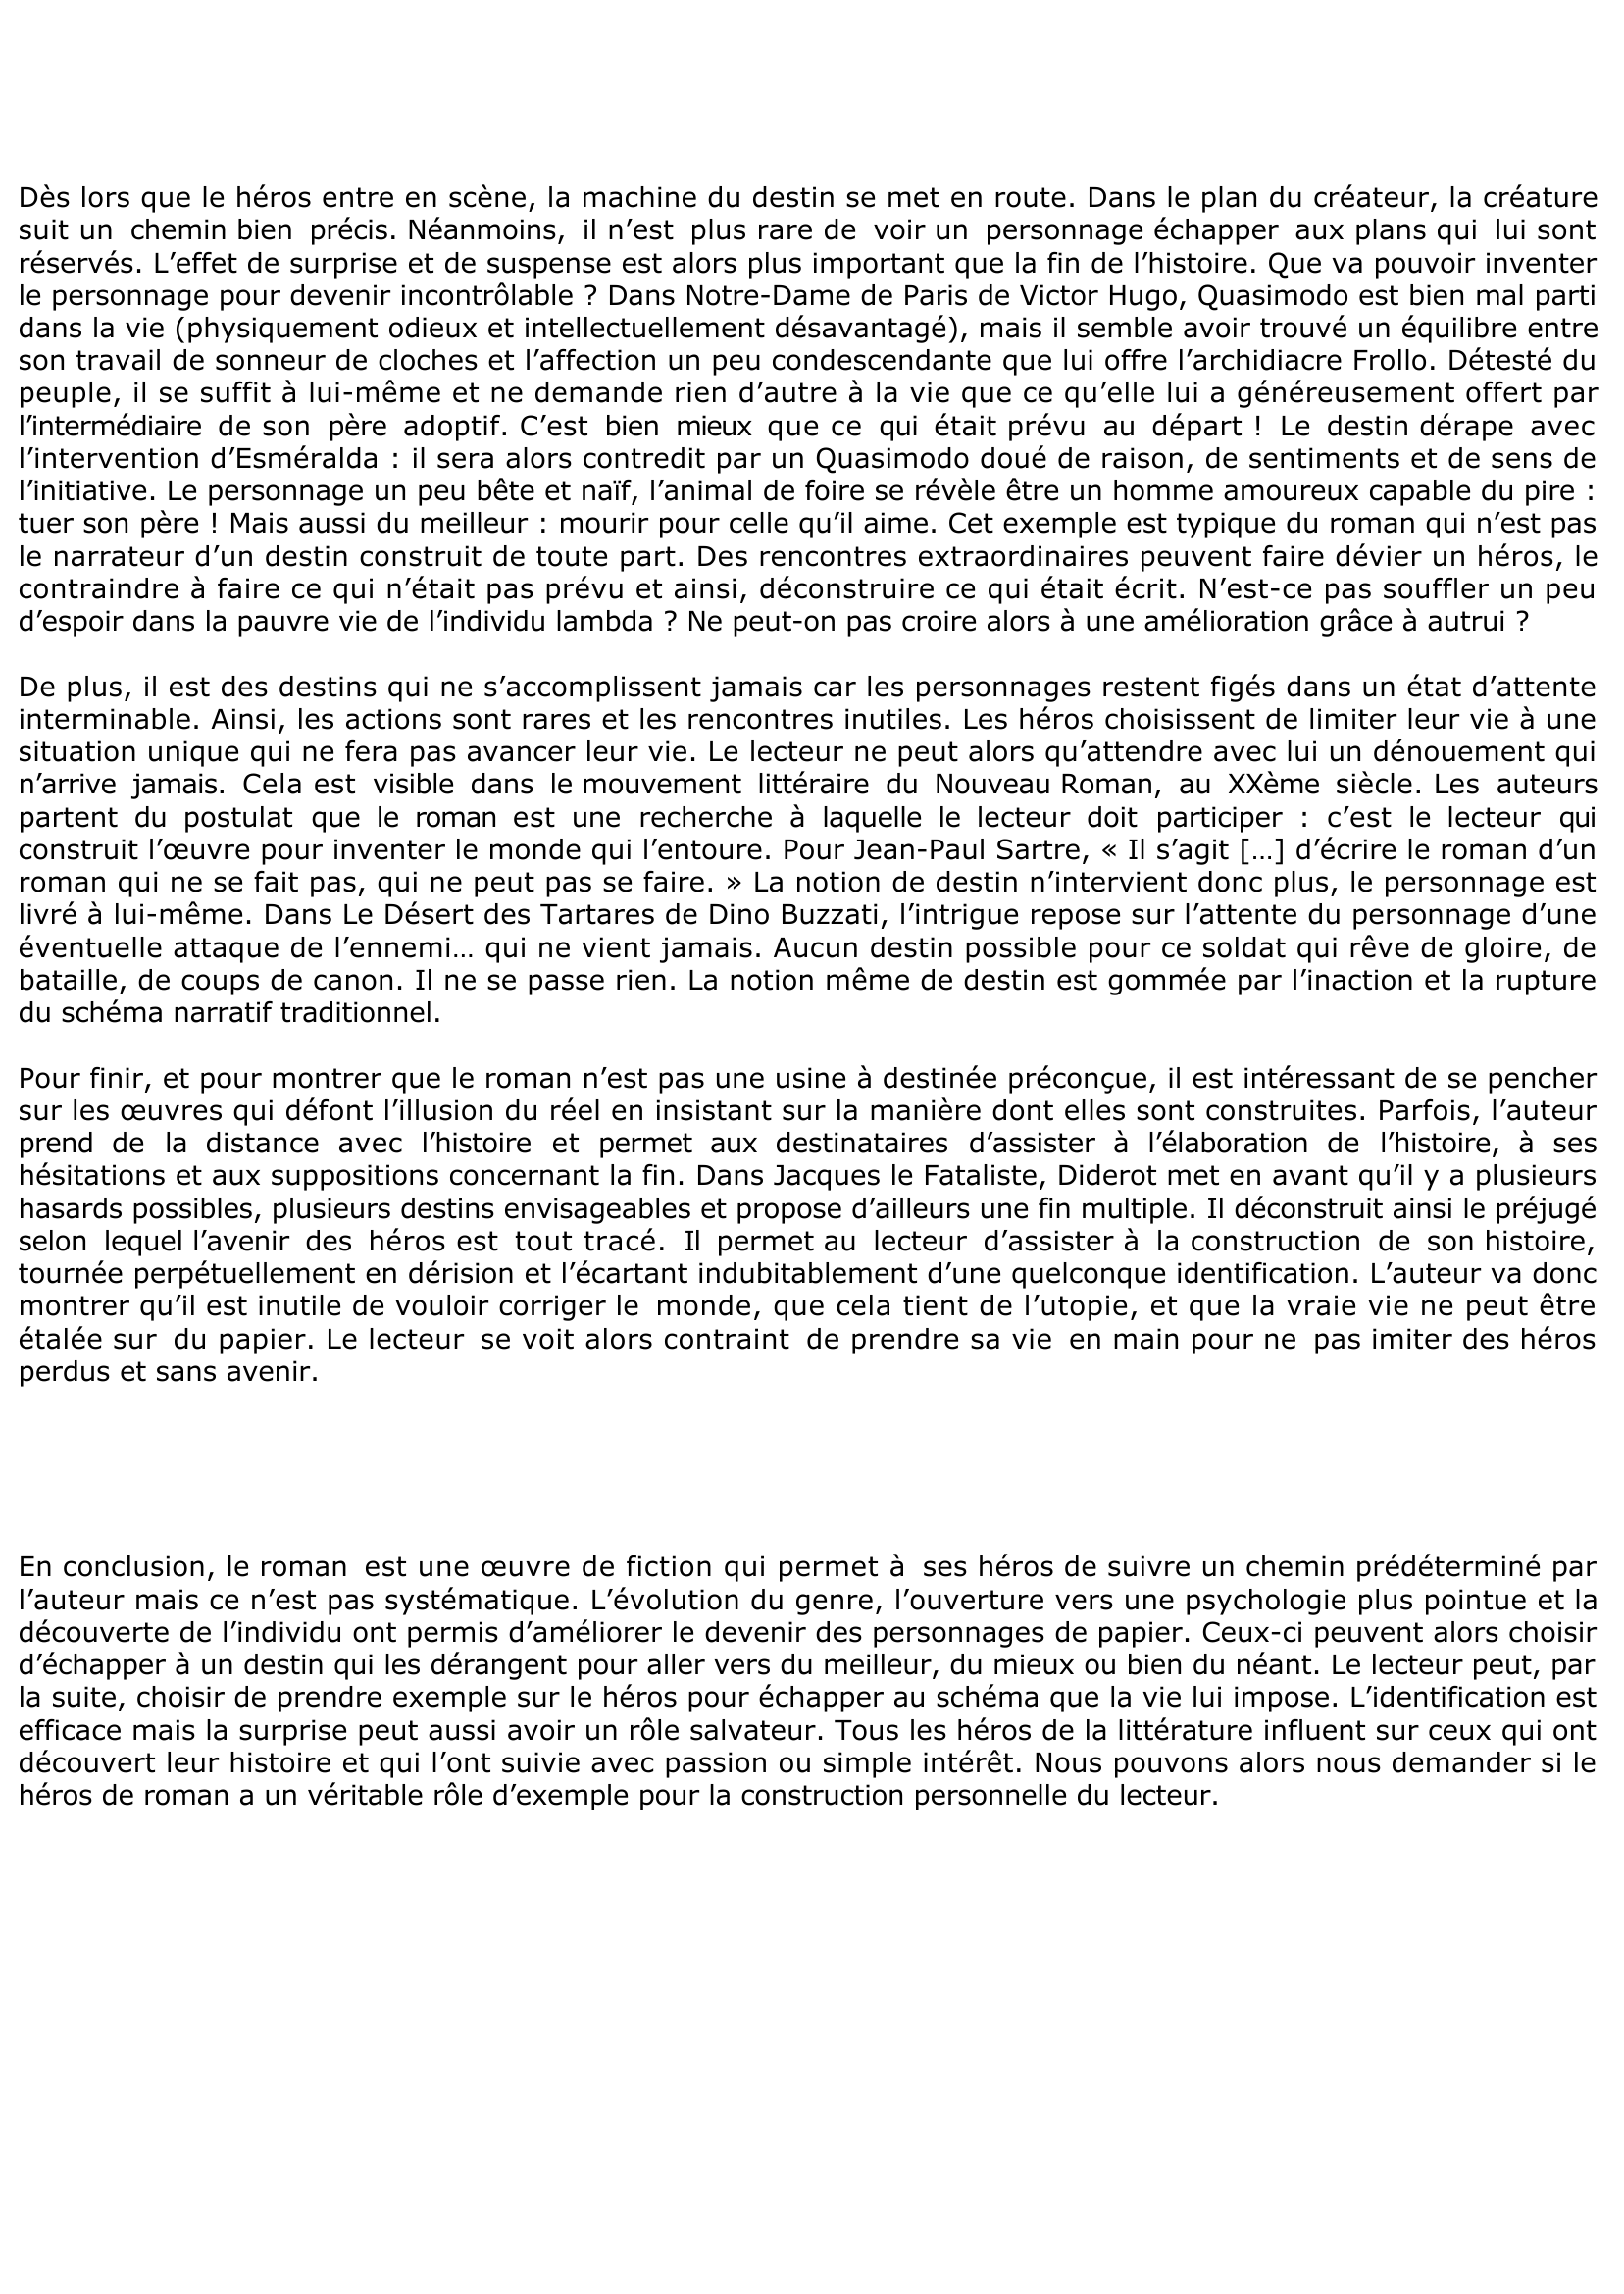 Prévisualisation du document Correction de dissertation, sujet d'Albert Camus "Le roman fabrique du destion sur mesure"